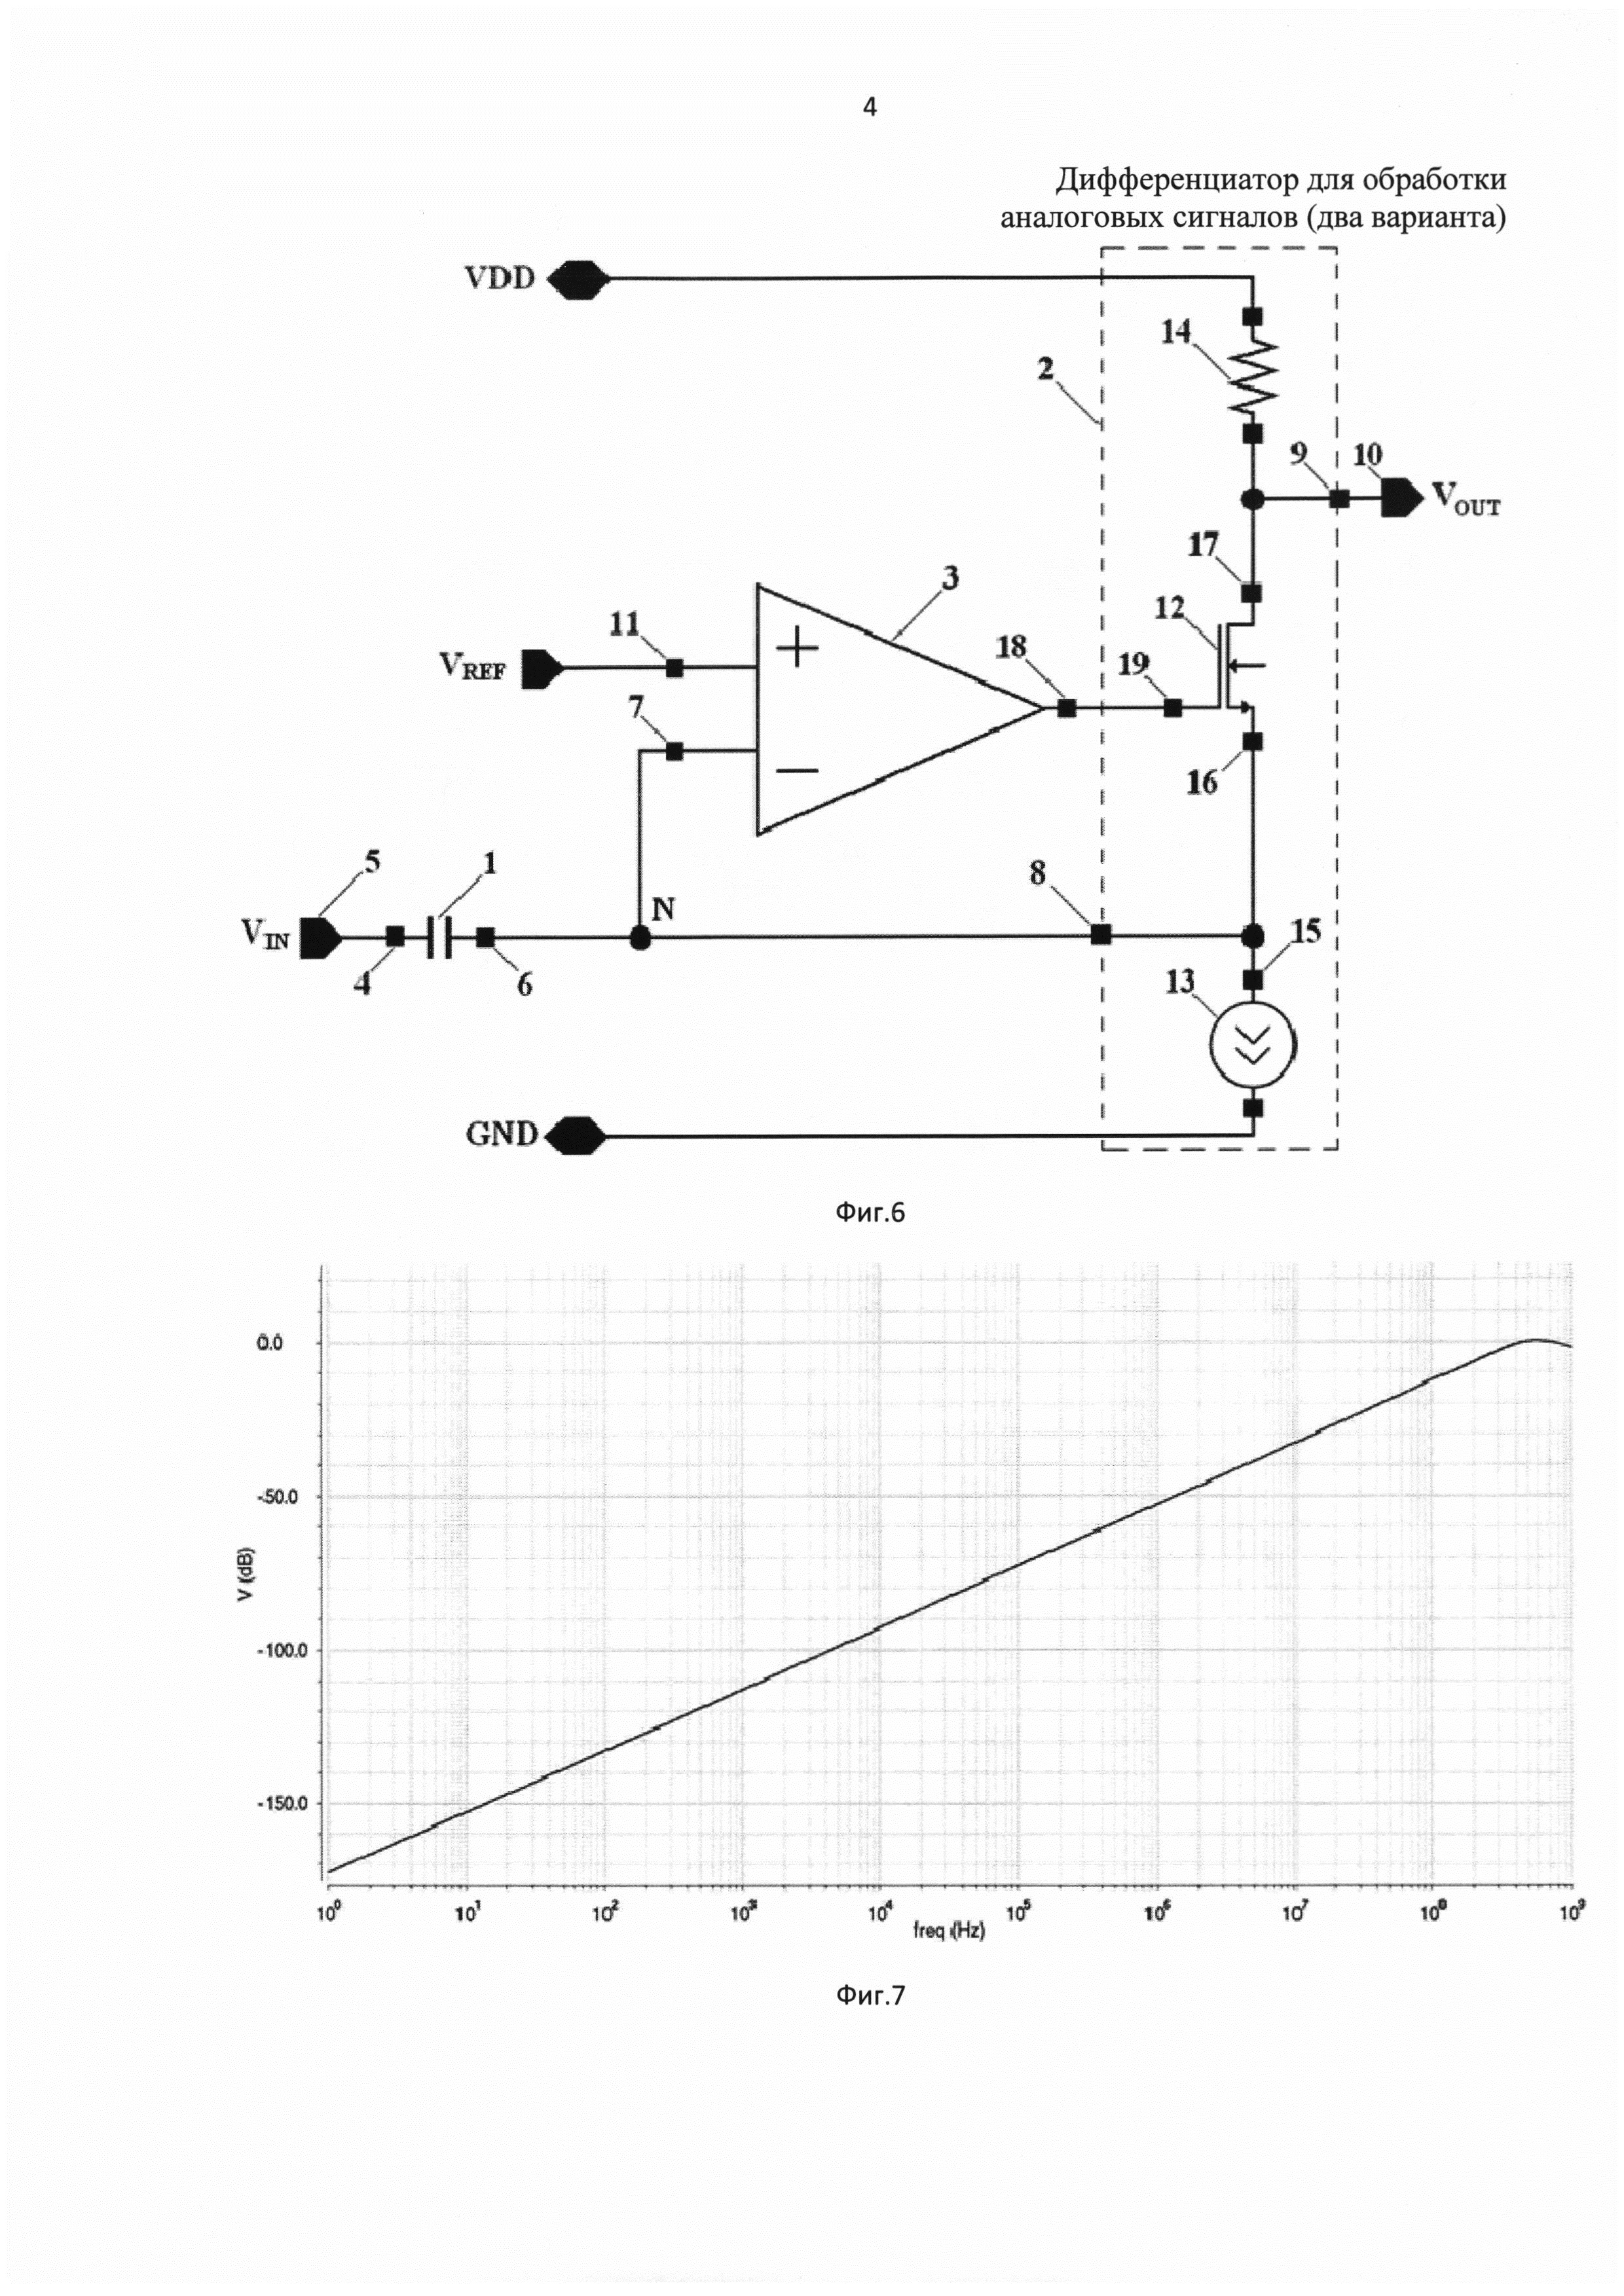 Дифференциатор для обработки аналоговых сигналов (варианты)